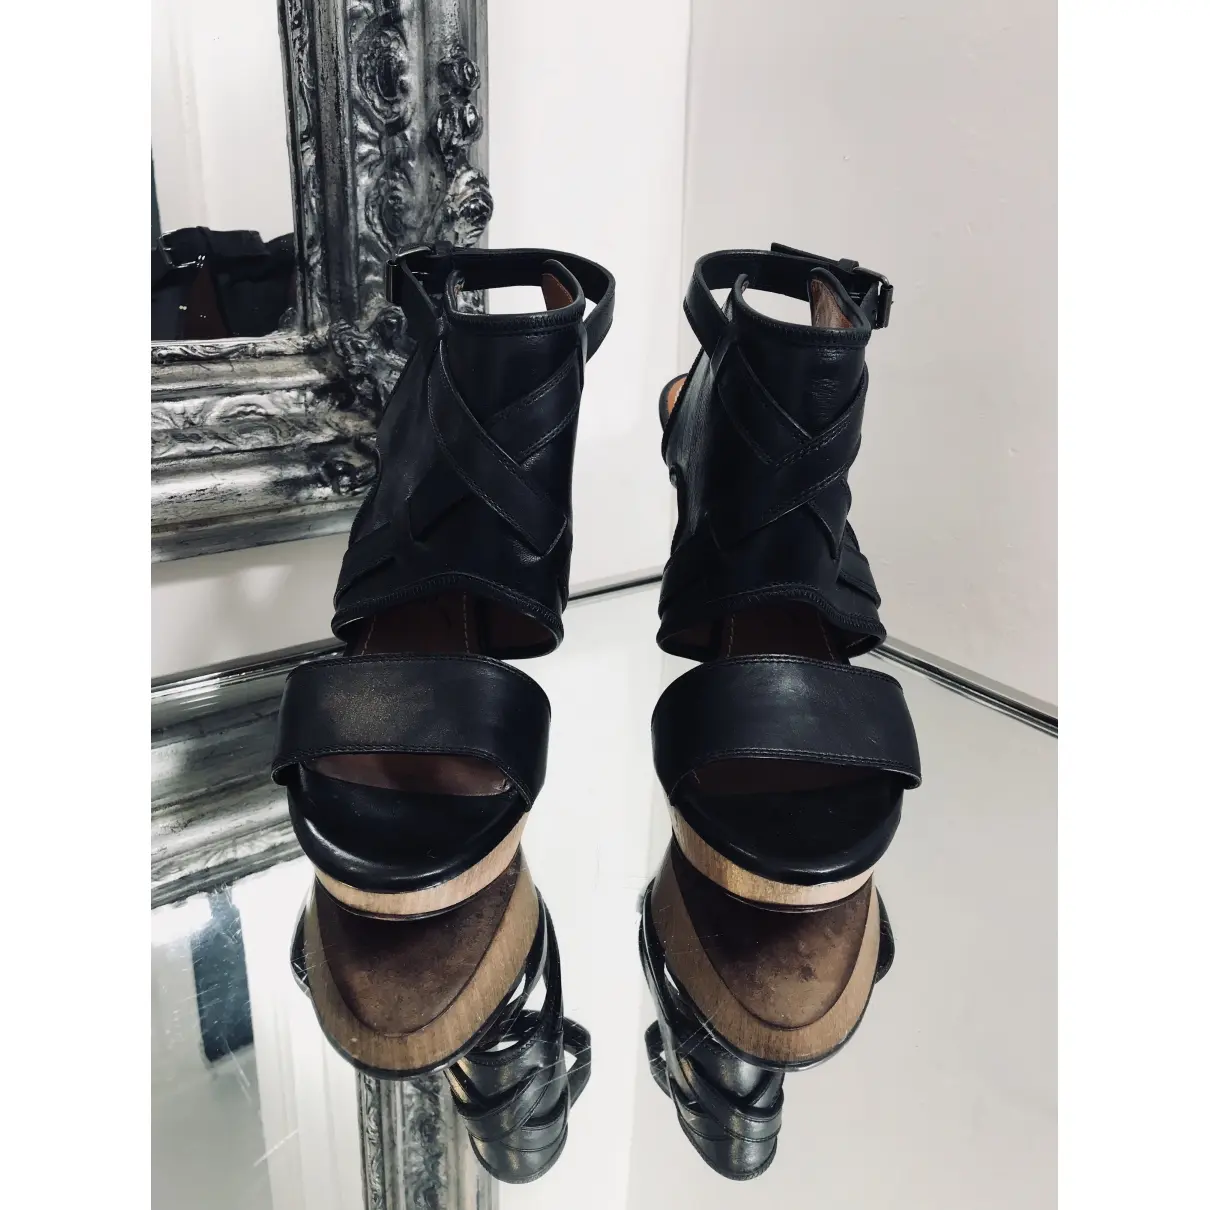 Buy Lanvin Leather heels online